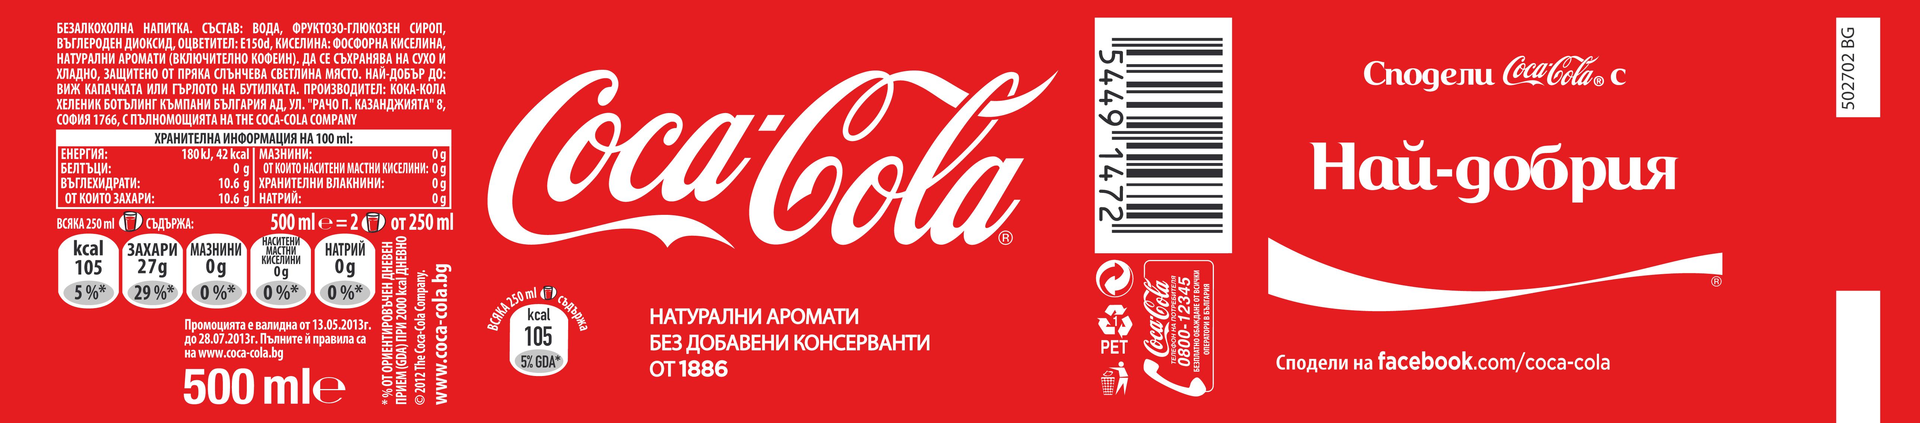 coca cola label template